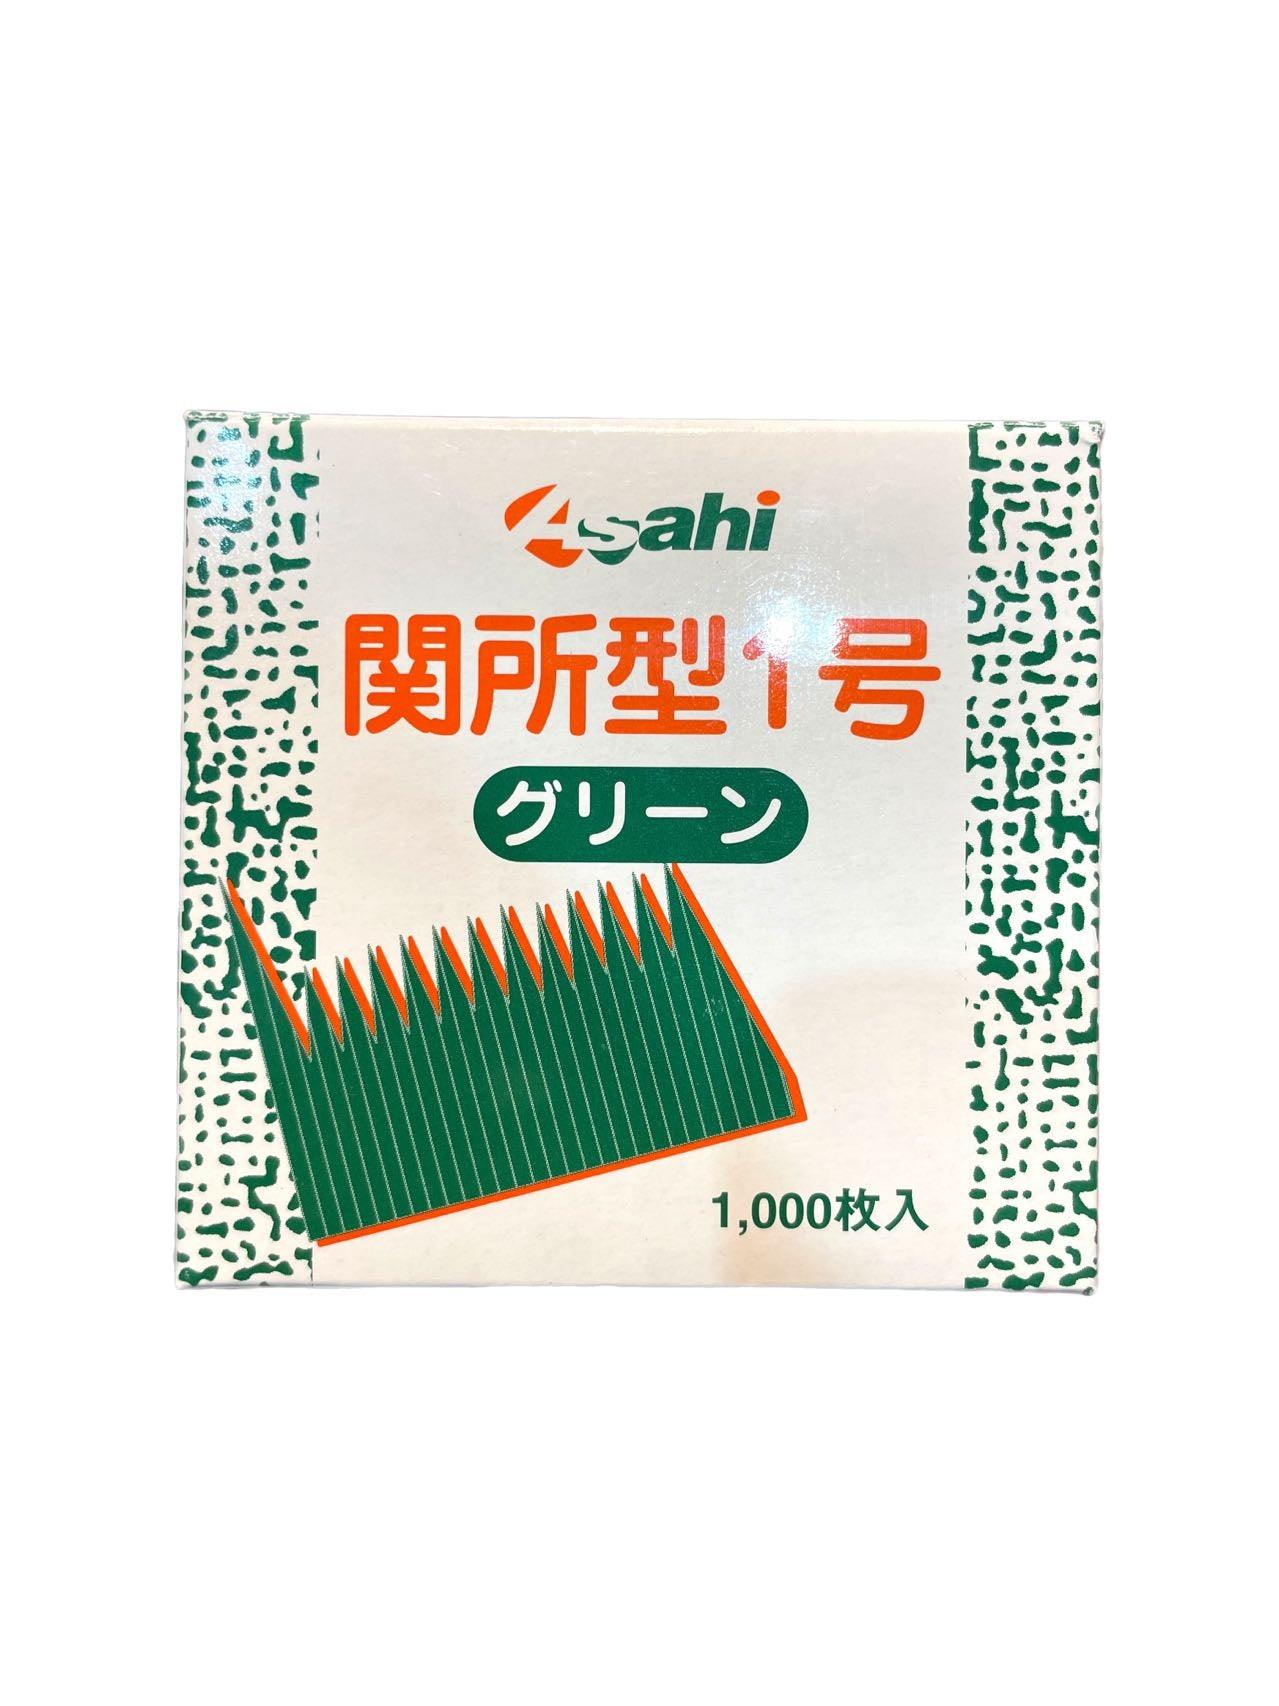 ASAHI SUSHI GRASS BARAN 1000 PCS - Premium Co  Groceries 